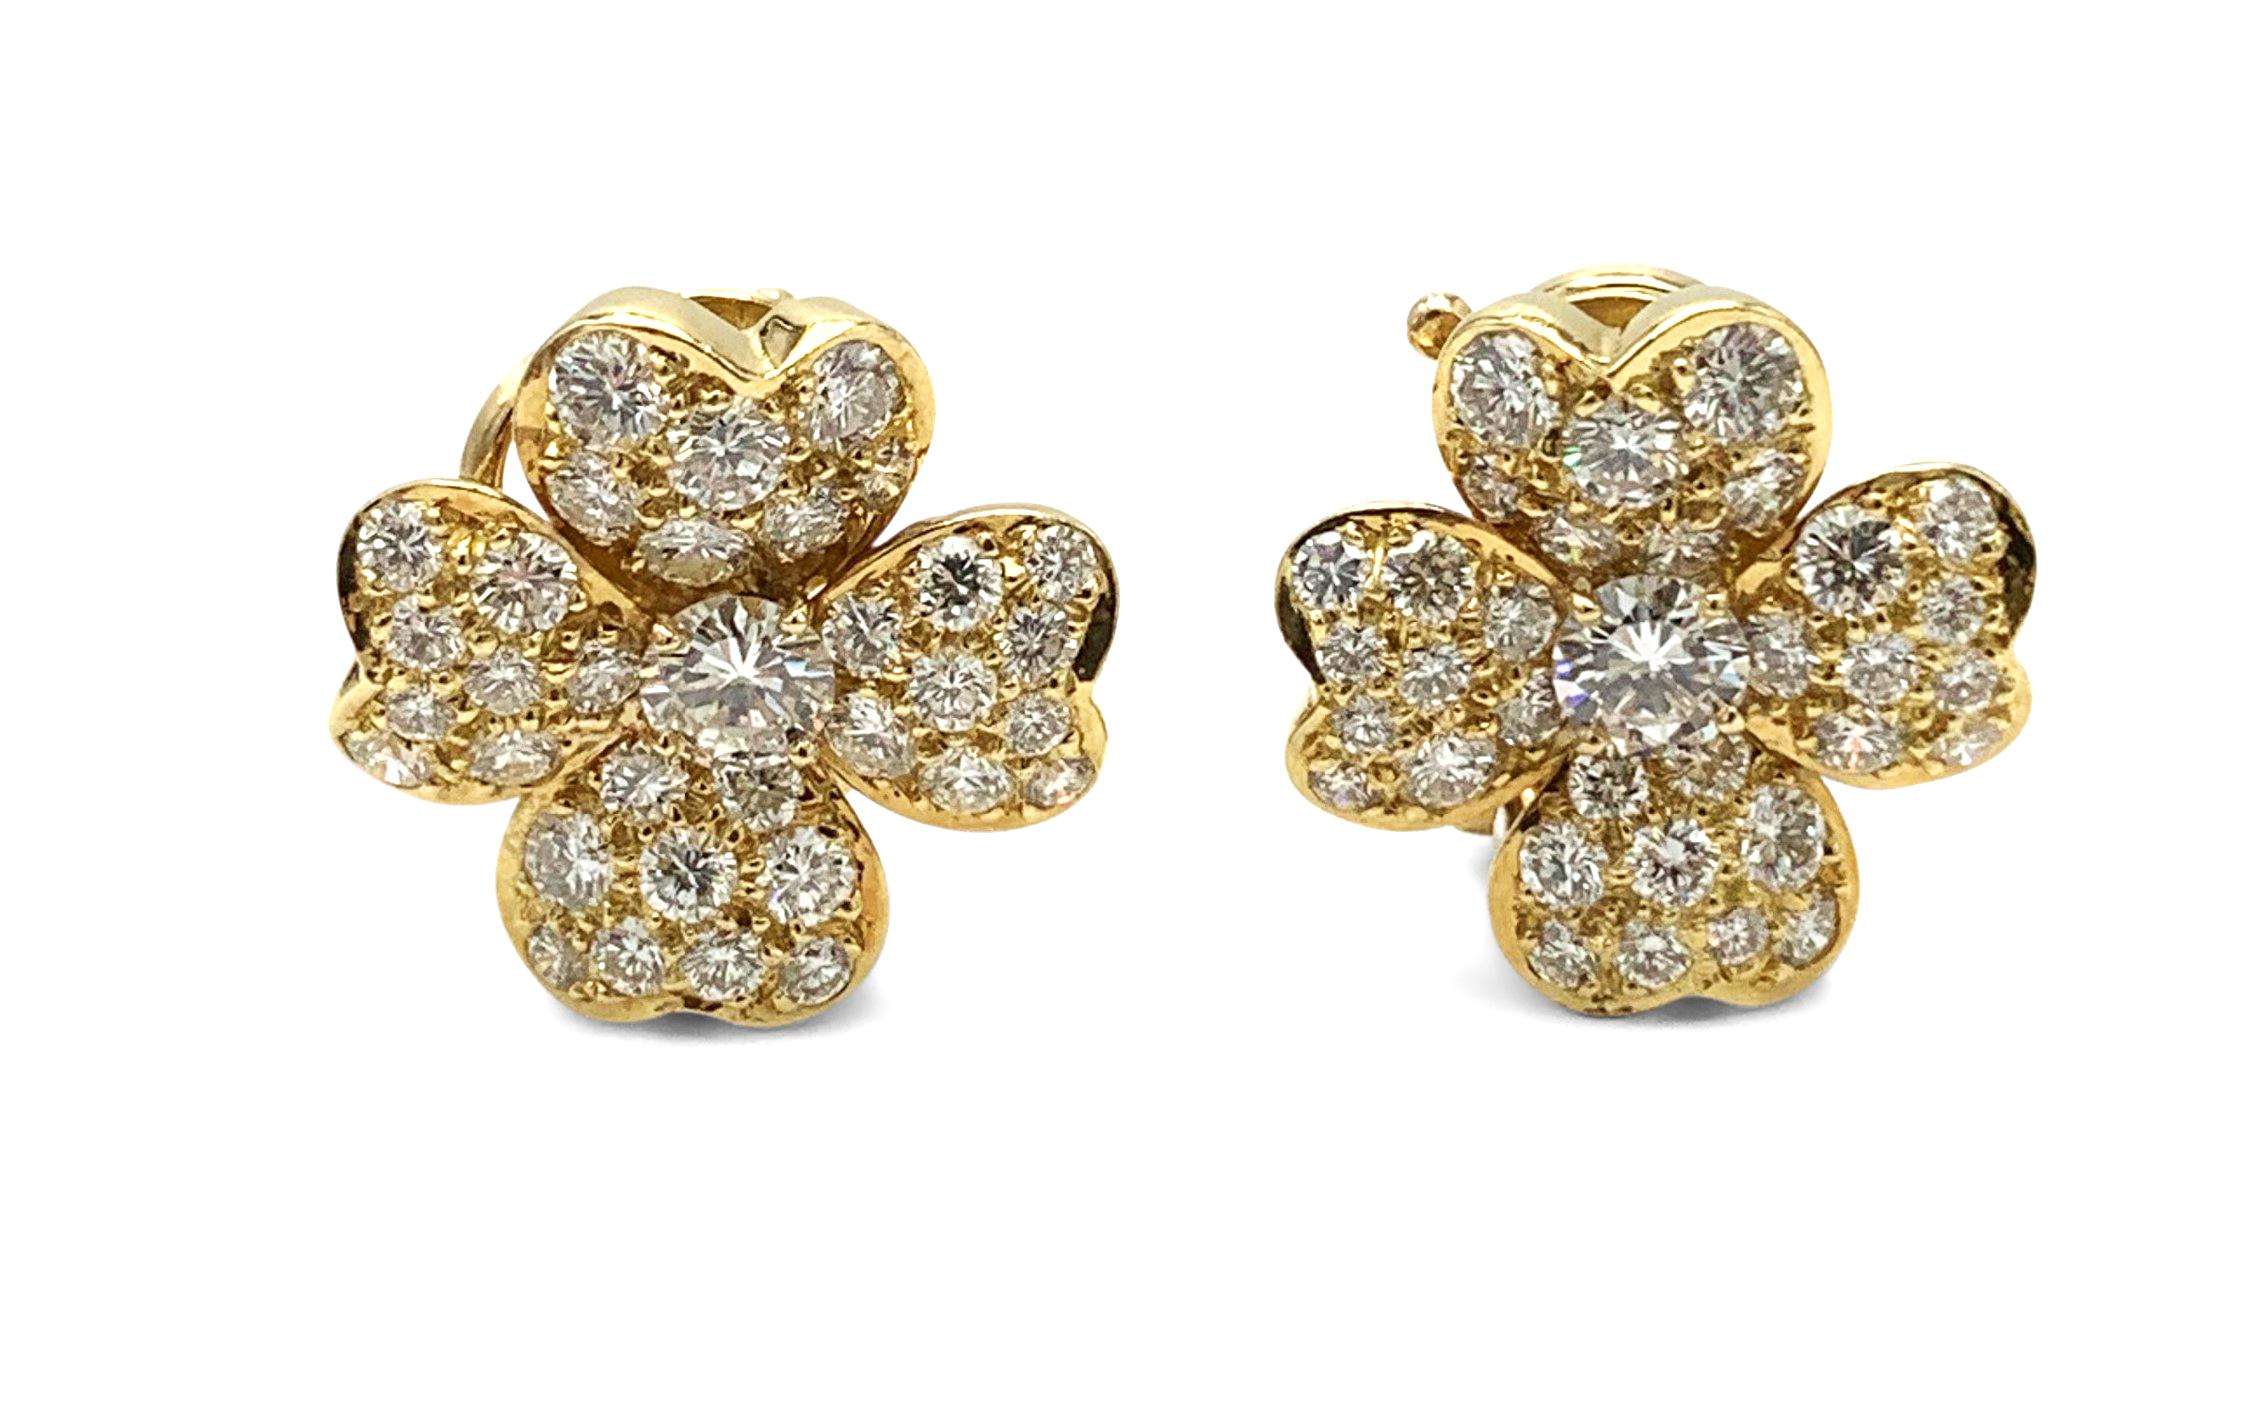 Women's Van Cleef & Arpels 'Cosmos' Gold and Diamond Earrings